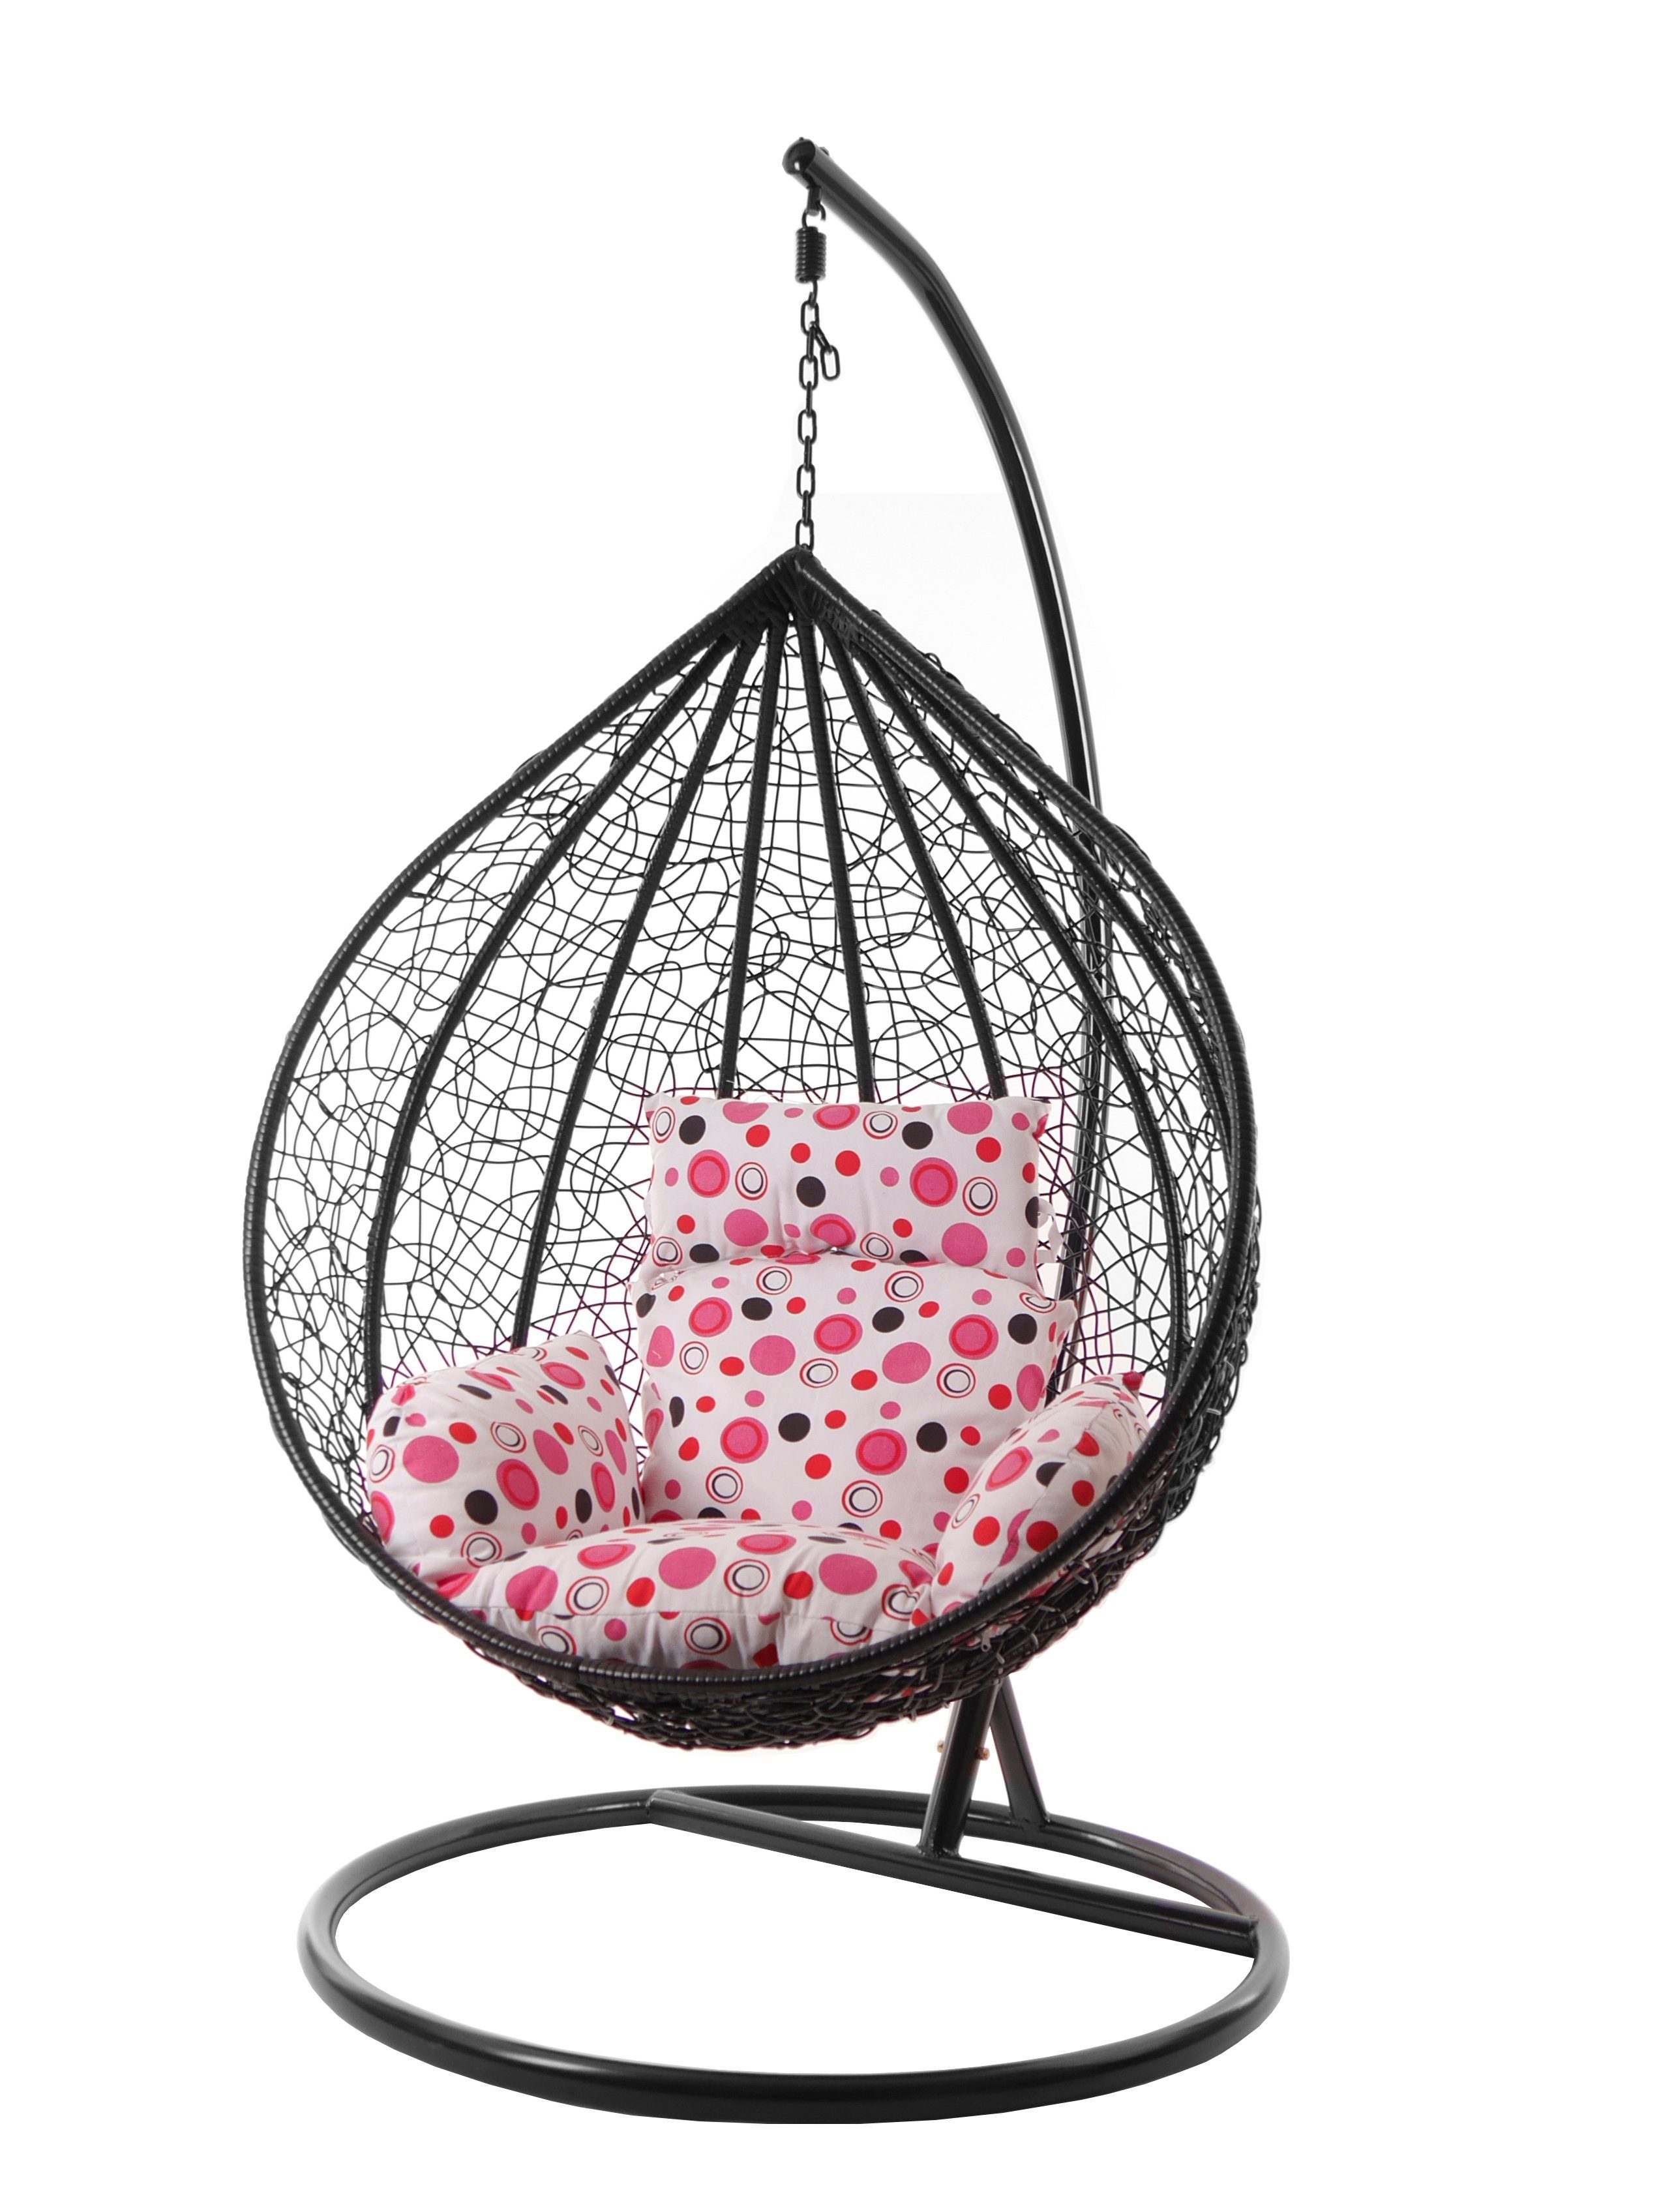 KIDEO Hängesessel Hängesessel MANACOR schwarz, XXL Swing Chair, Hängesessel mit Gestell und Kissen, Nest-Kissen rosa gepunktet (3039 lemonade dot)